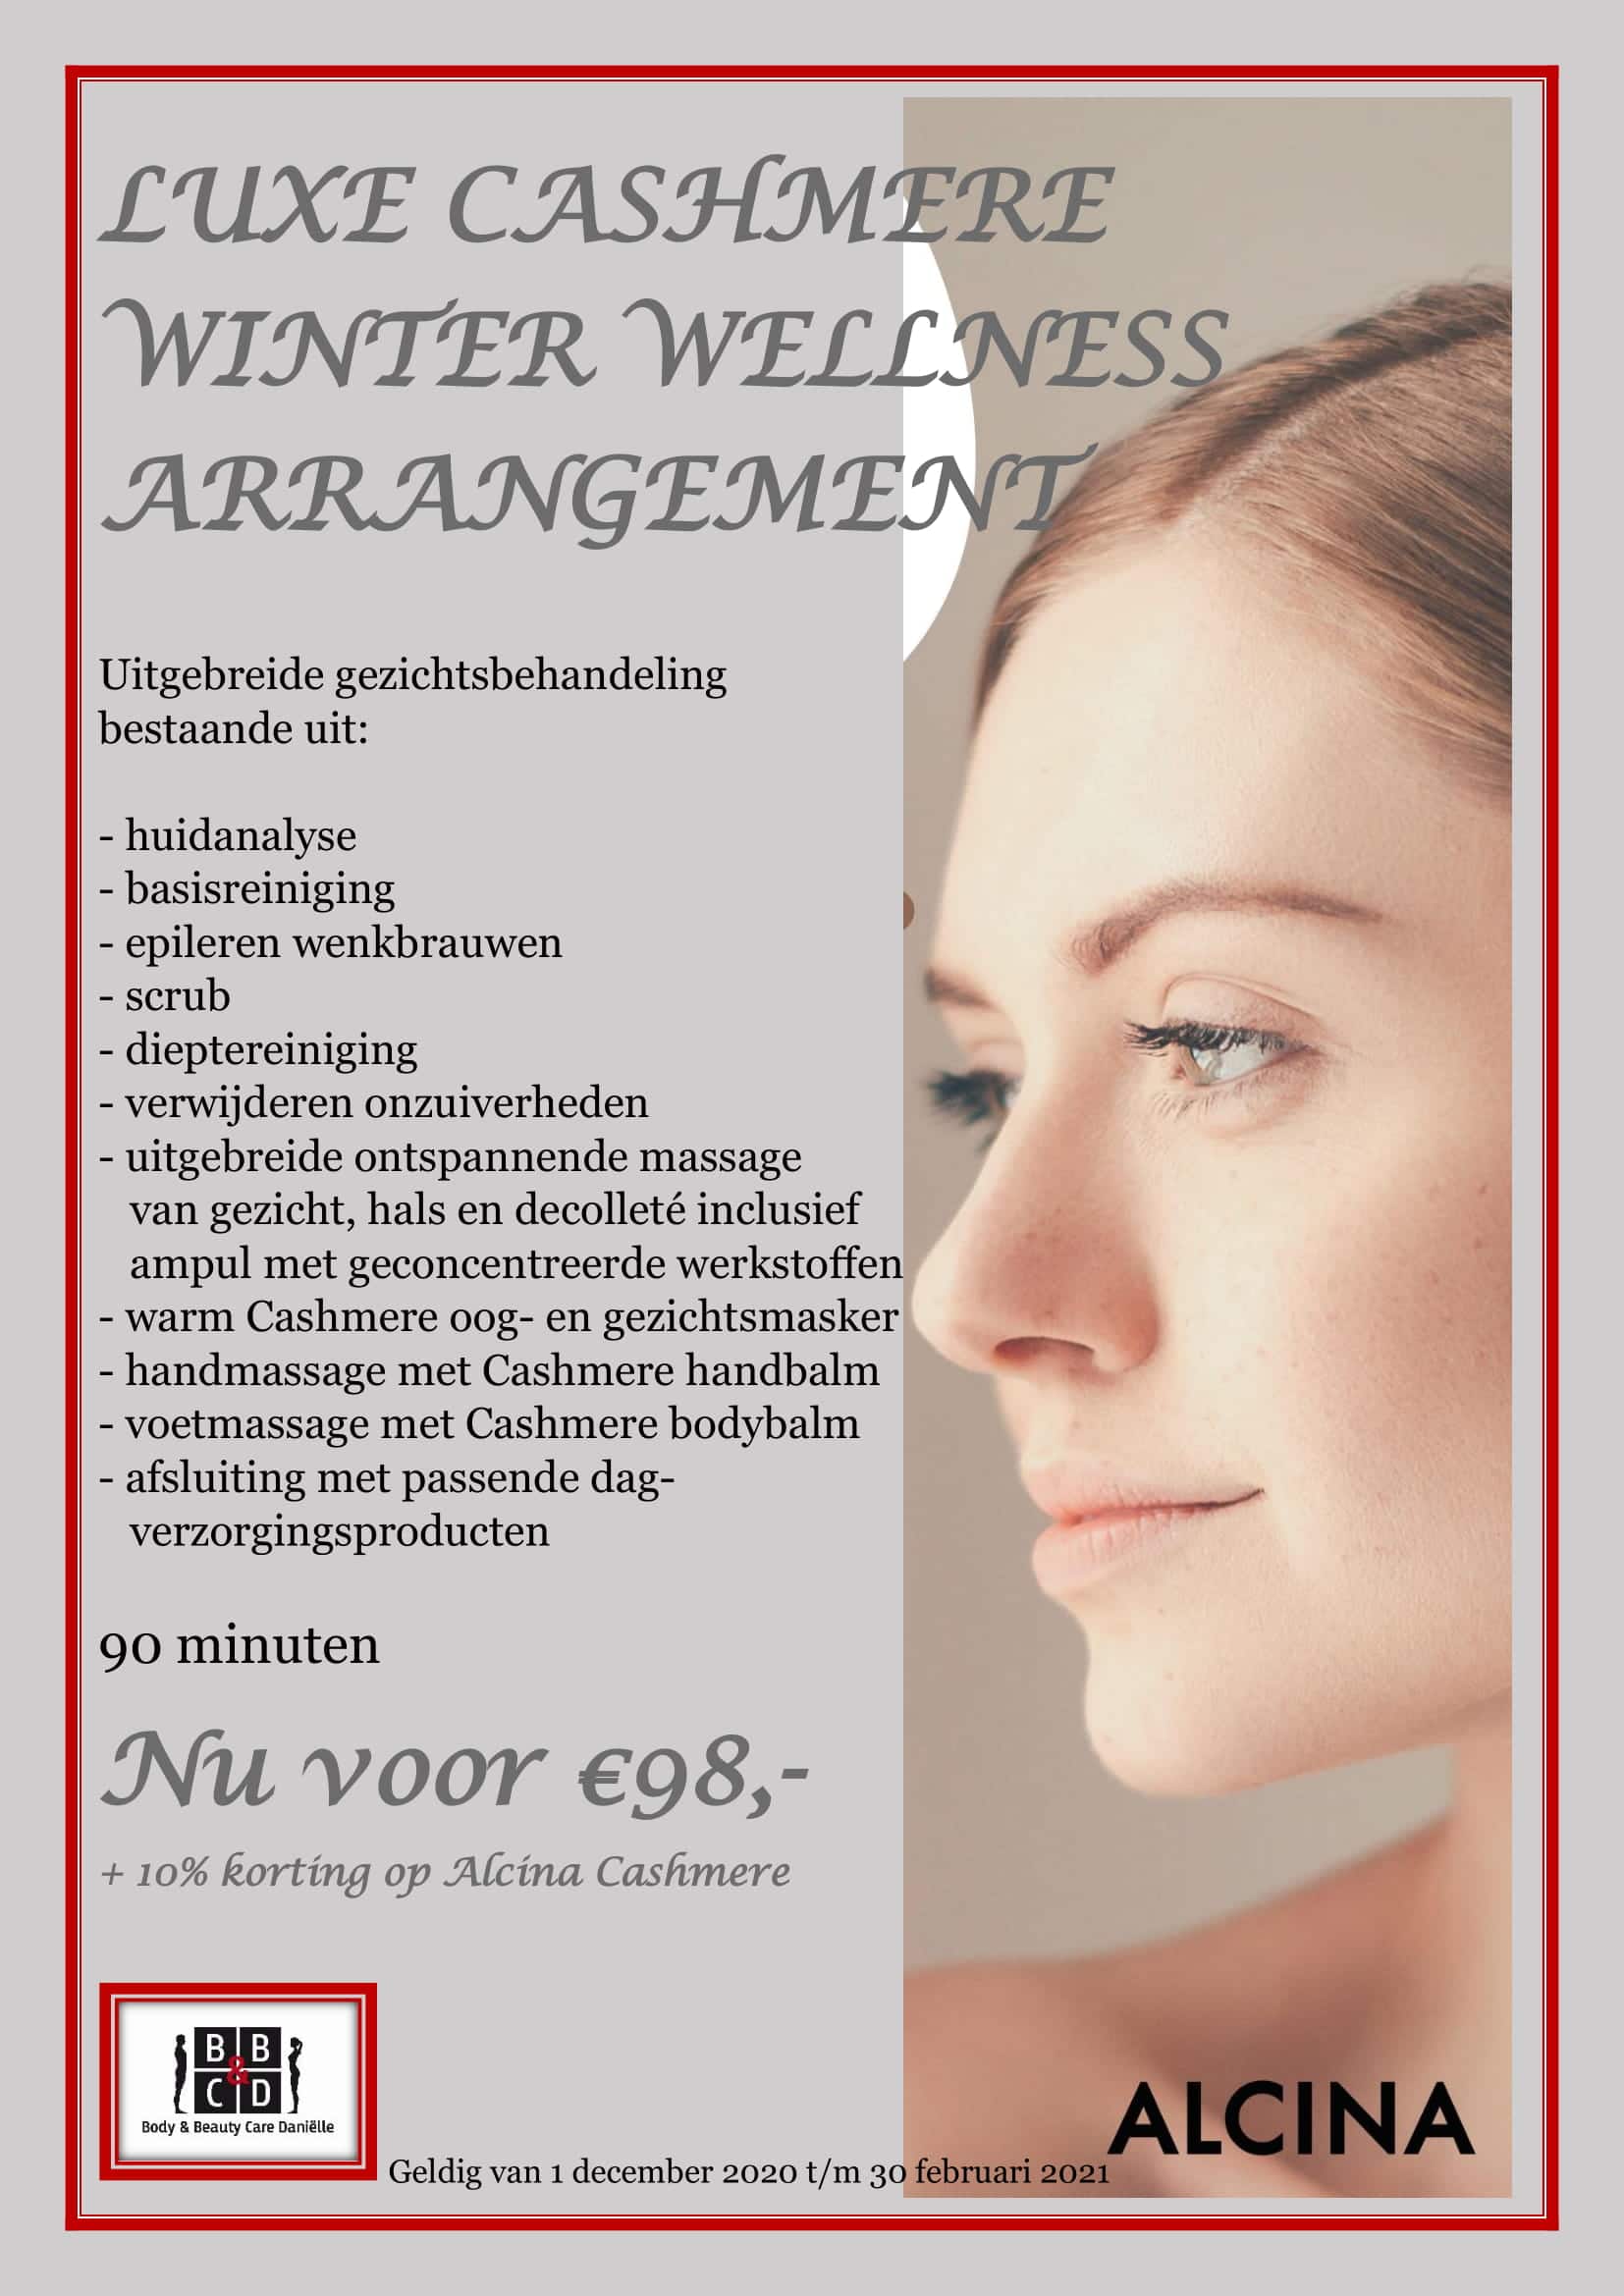 Luxe Cashmere Winter Wellness Arrangement Schoonheidssalon Body Beauty Care Danielle Nieuwkoop